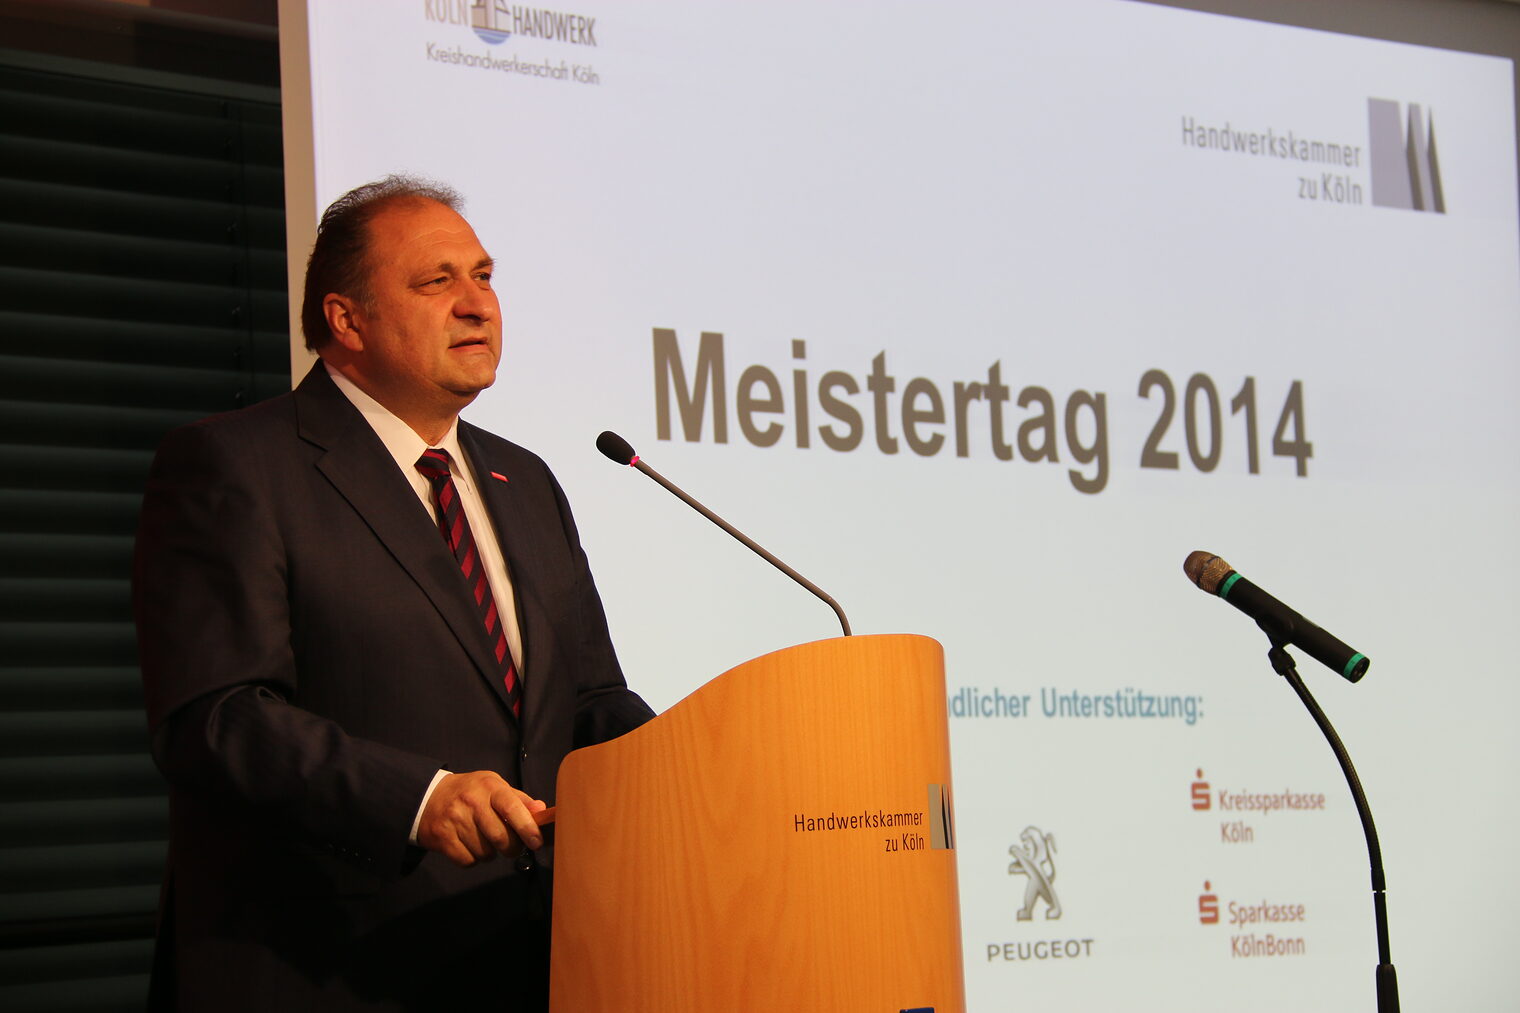 Meistertag 2014 32